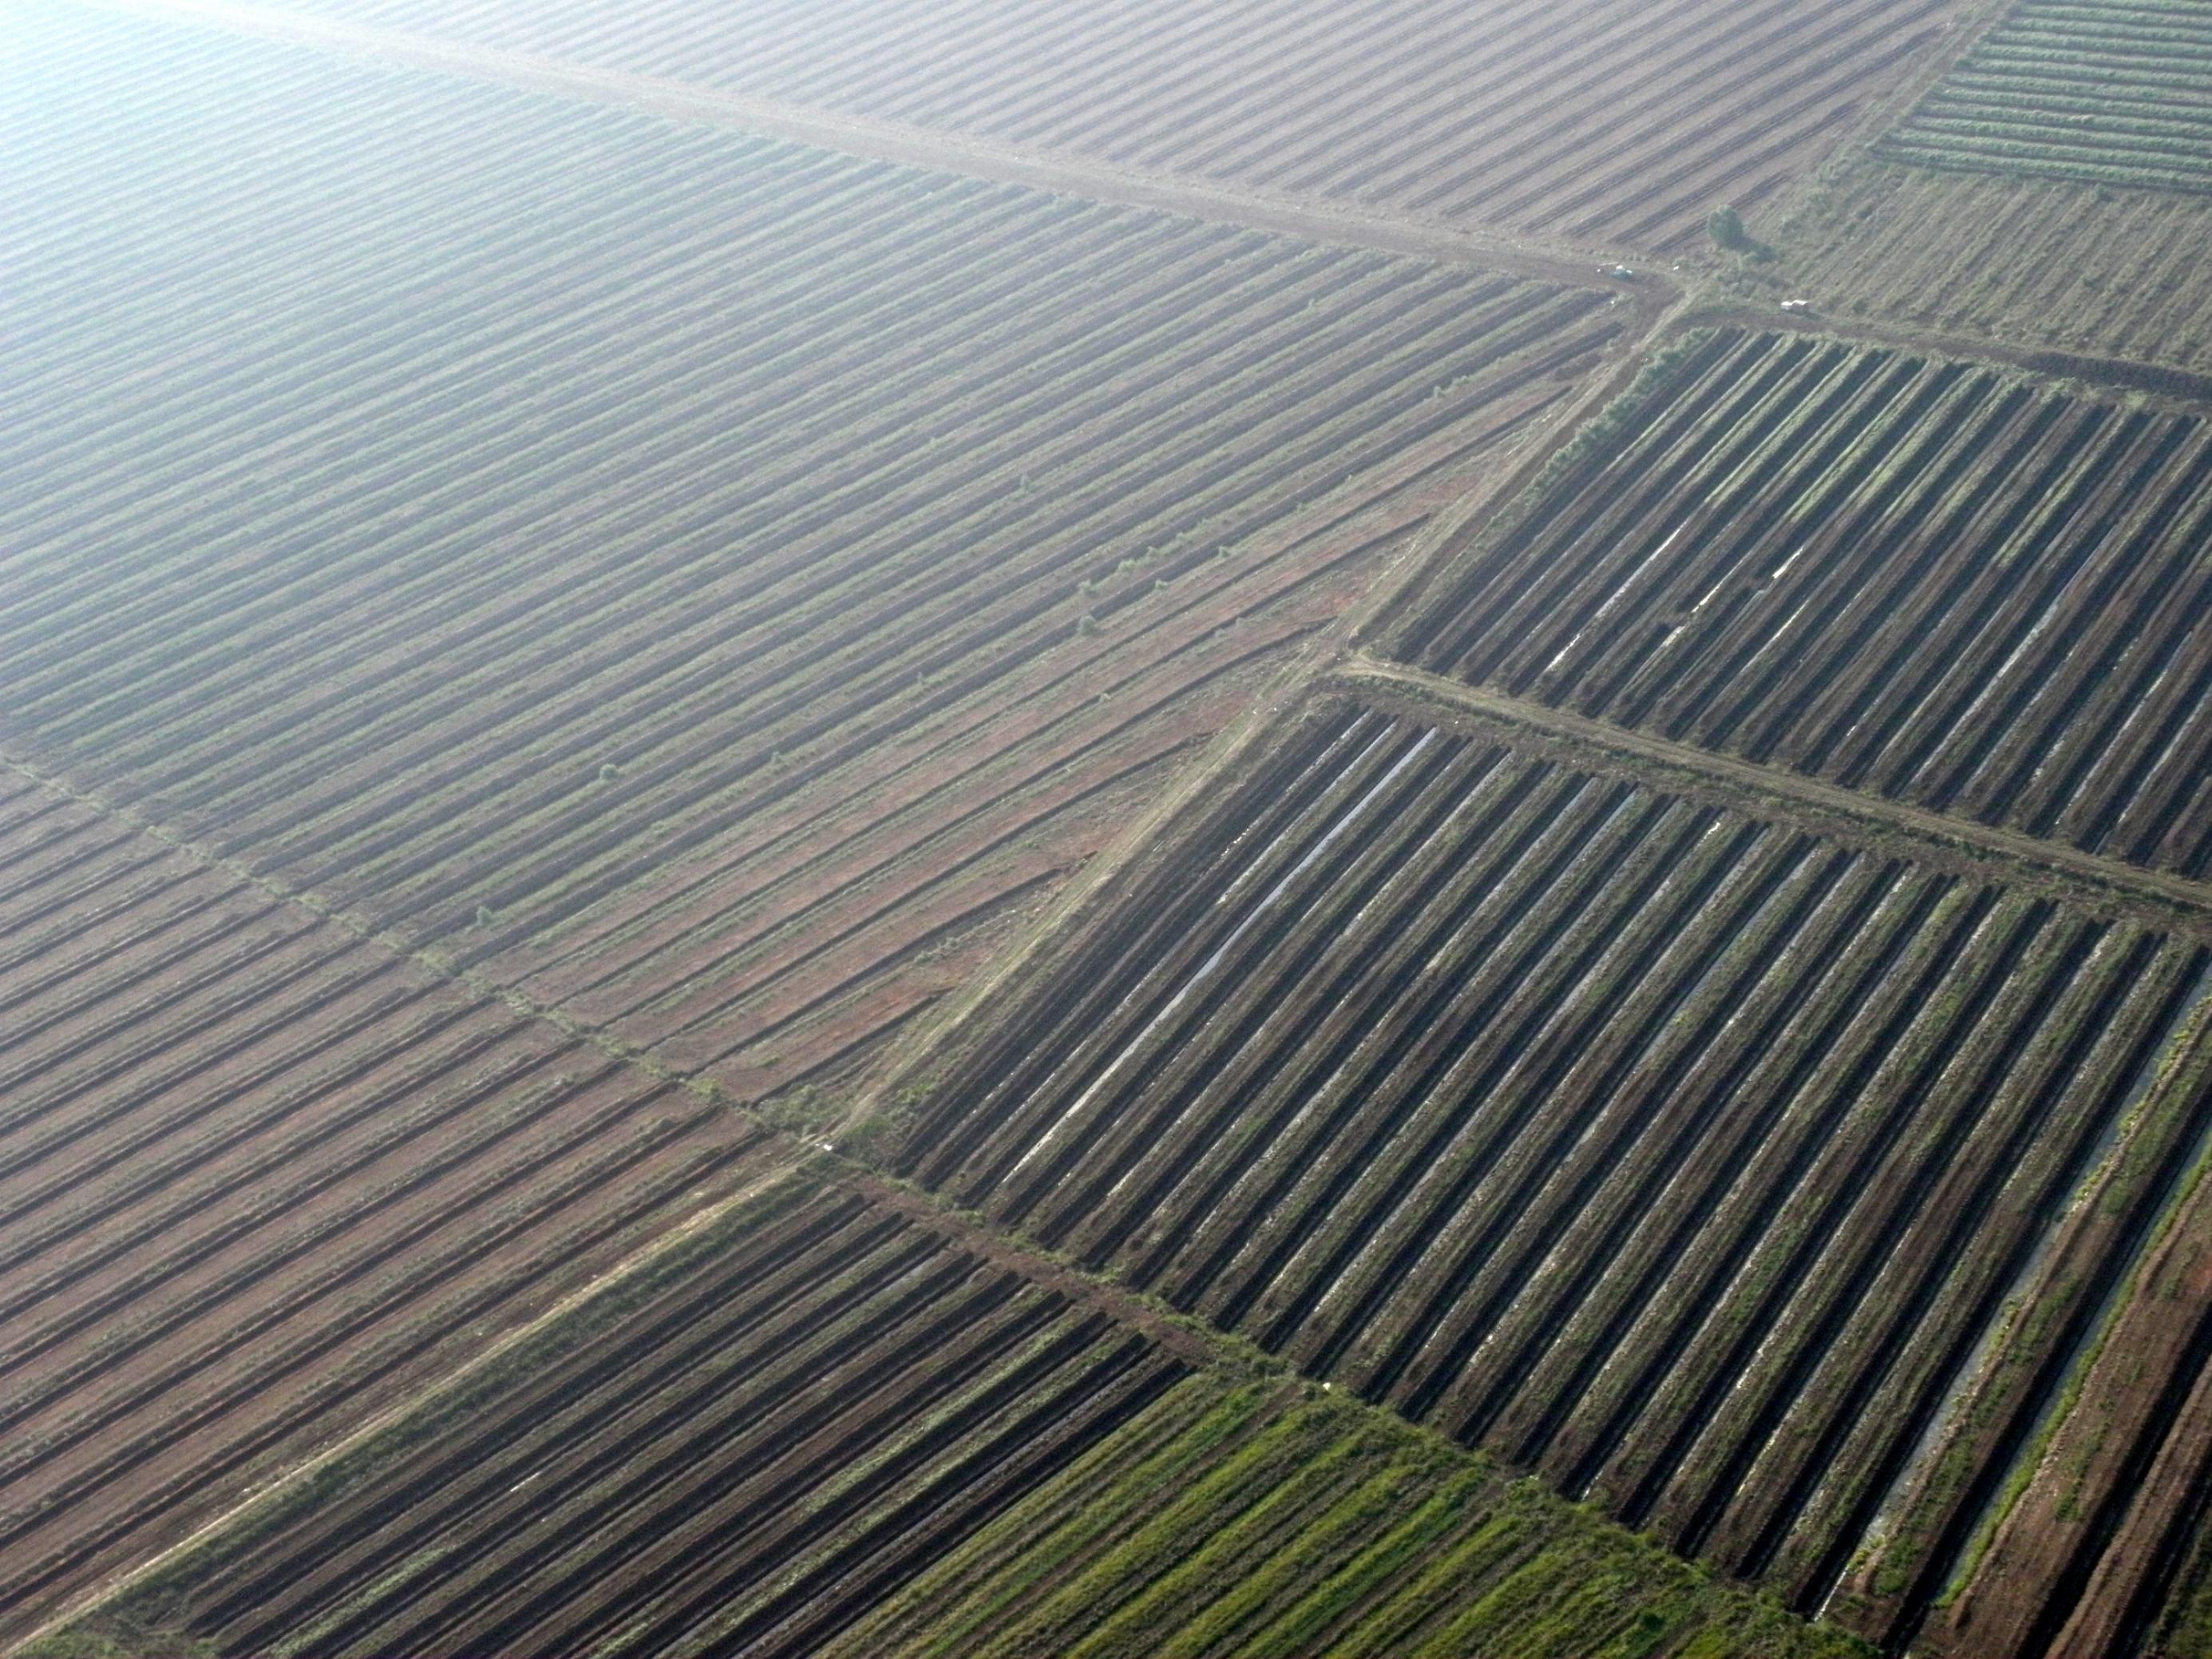 Luftaufnahme eines Torfabbaugebiets. Lange Reihen von abgebauten Soden liegen auf dem nackten braunen Boden